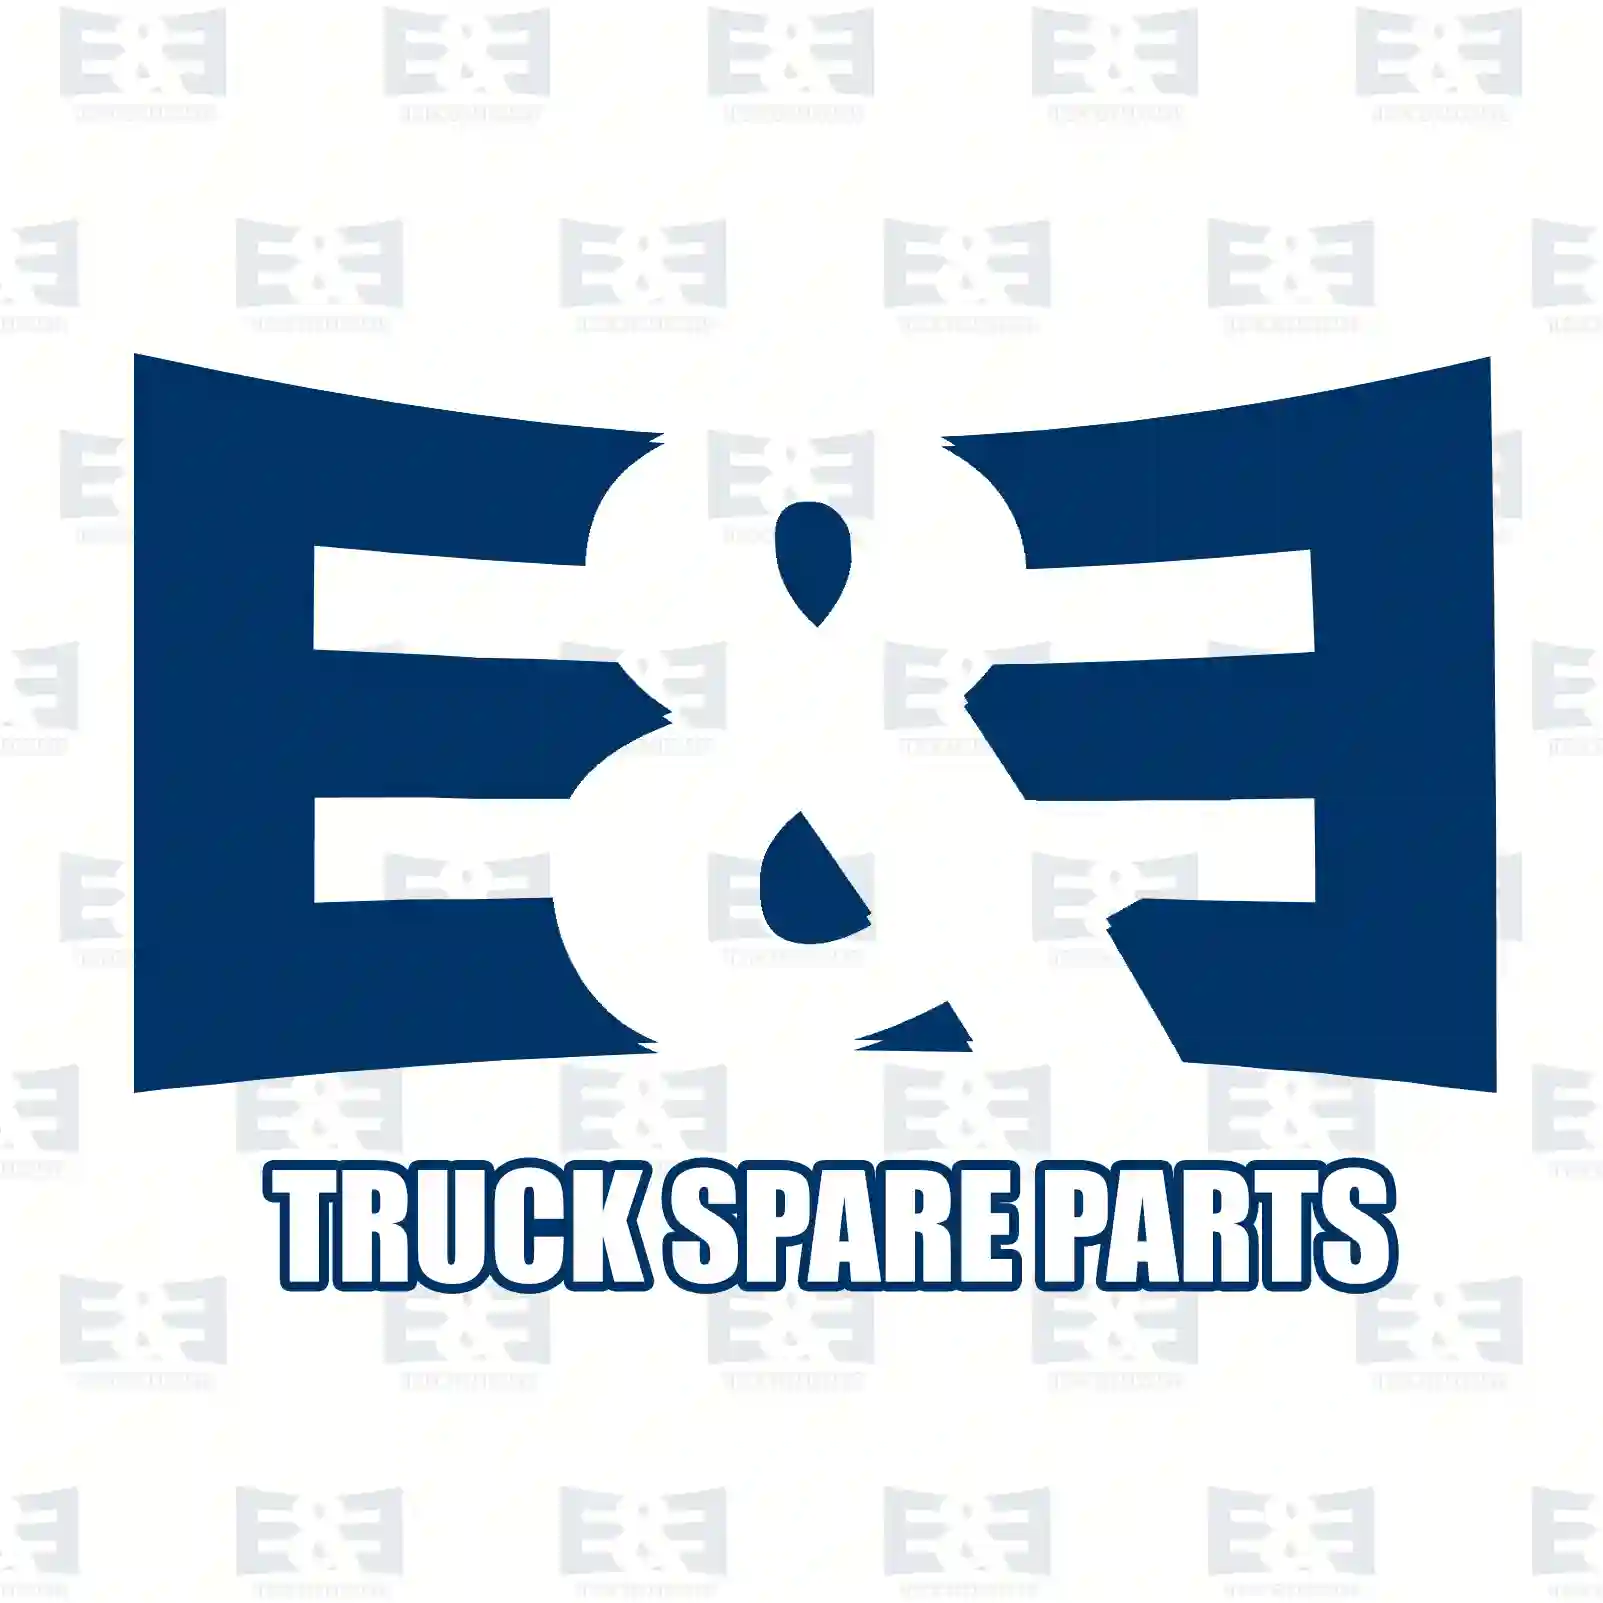 Load sensitive valve, 2E2294782, 0170985, 1236824, 1236824A, 1236824R, 170985 ||  2E2294782 E&E Truck Spare Parts | Truck Spare Parts, Auotomotive Spare Parts Load sensitive valve, 2E2294782, 0170985, 1236824, 1236824A, 1236824R, 170985 ||  2E2294782 E&E Truck Spare Parts | Truck Spare Parts, Auotomotive Spare Parts